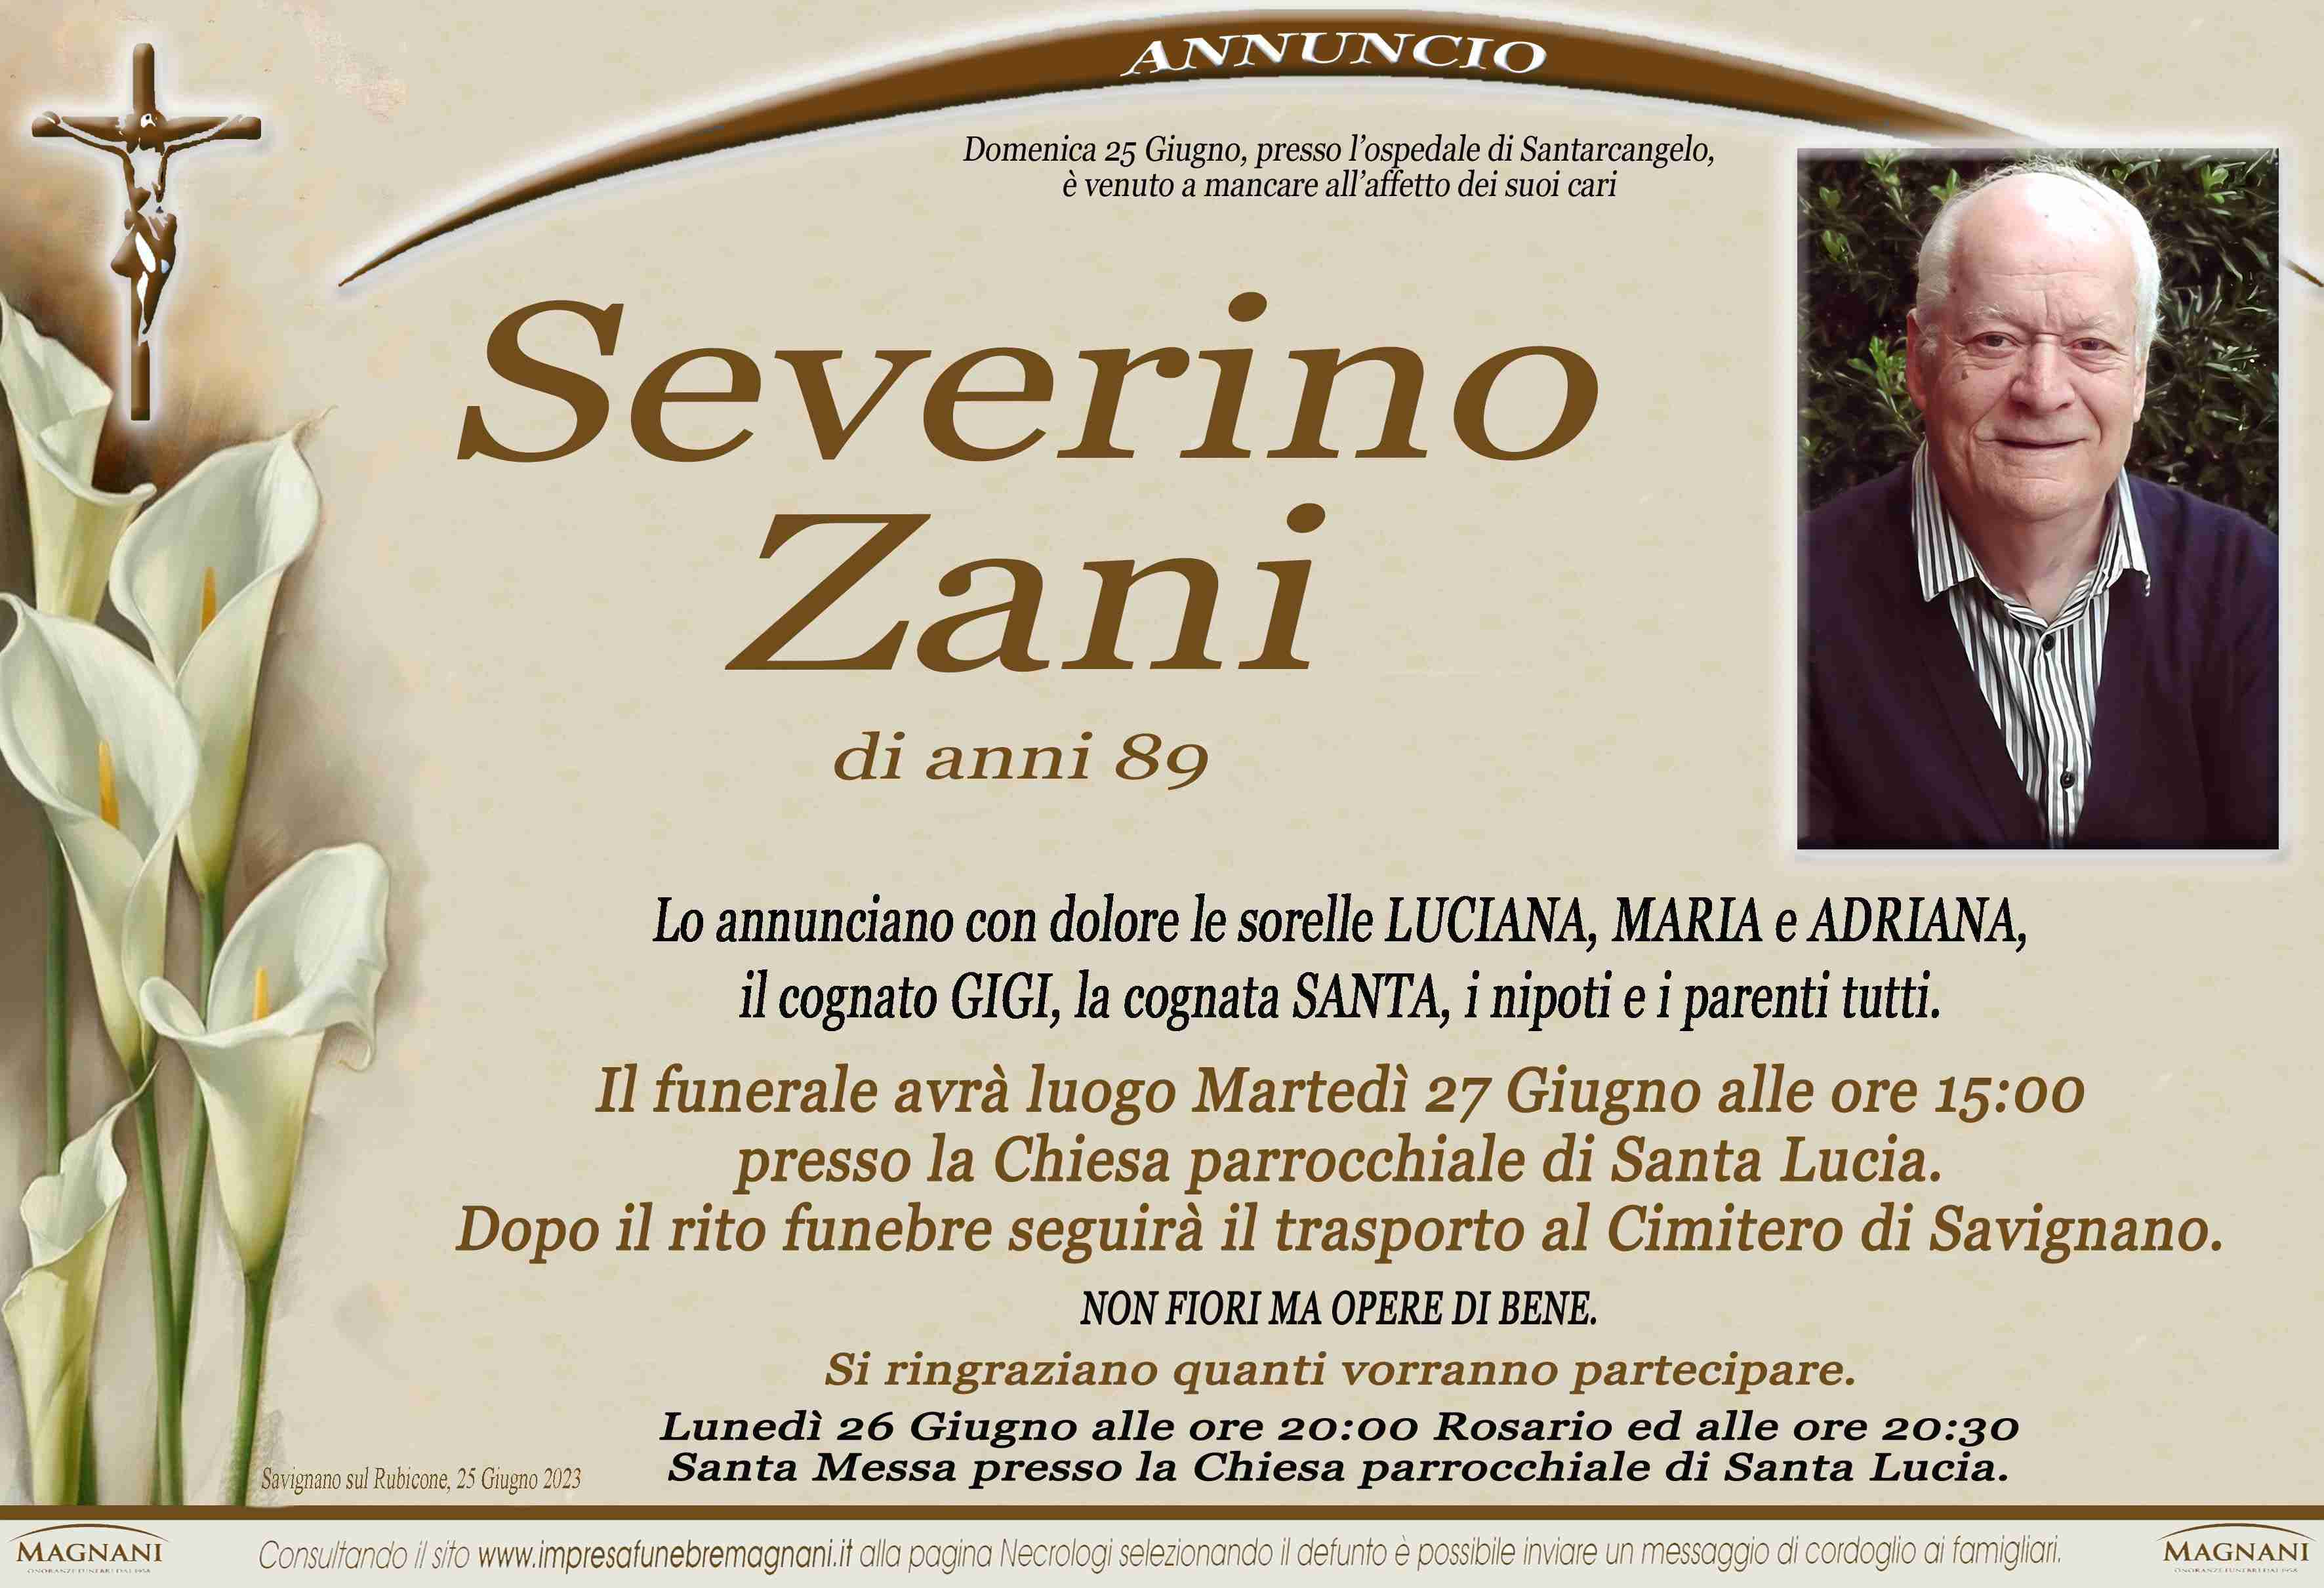 Severino Zani